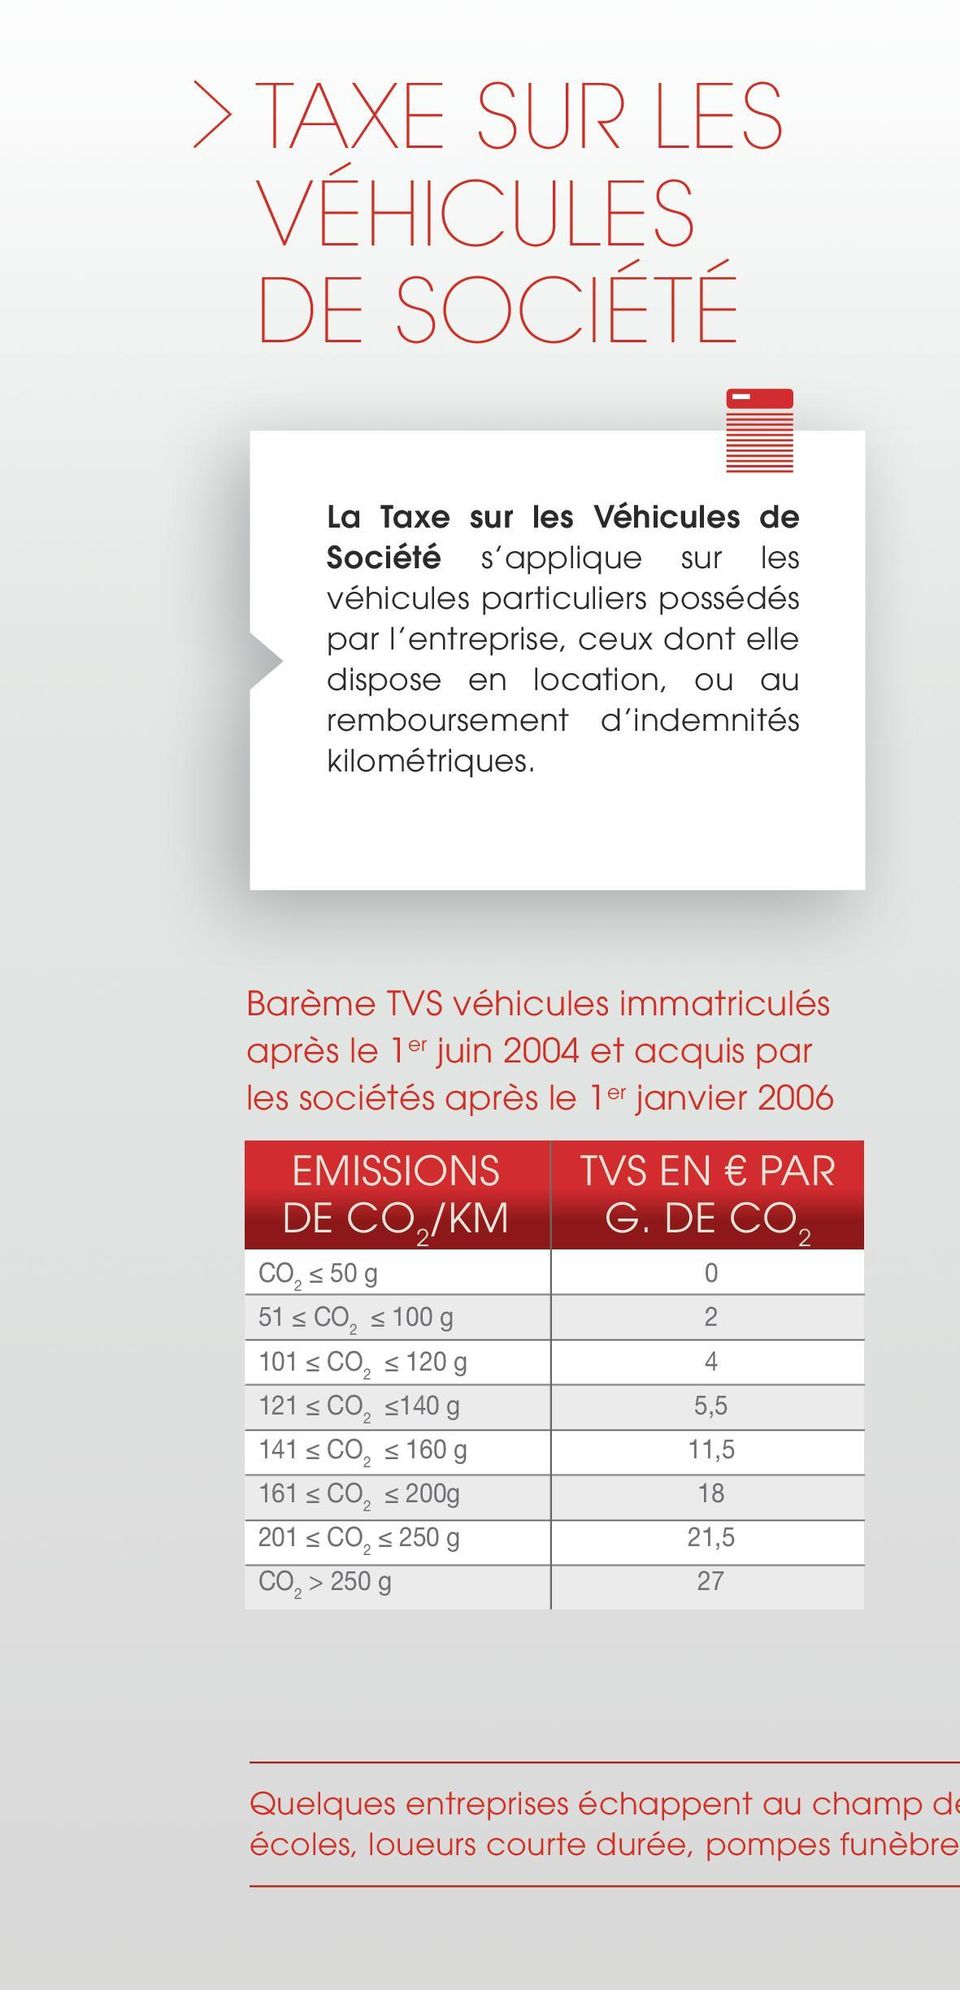 Barème TVS véhicules immatriculés après le 1 er juin 2004 et acquis par les sociétés après le 1 er janvier 2006 EMISSIONS DE CO 2 /KM TVS EN PAR g.